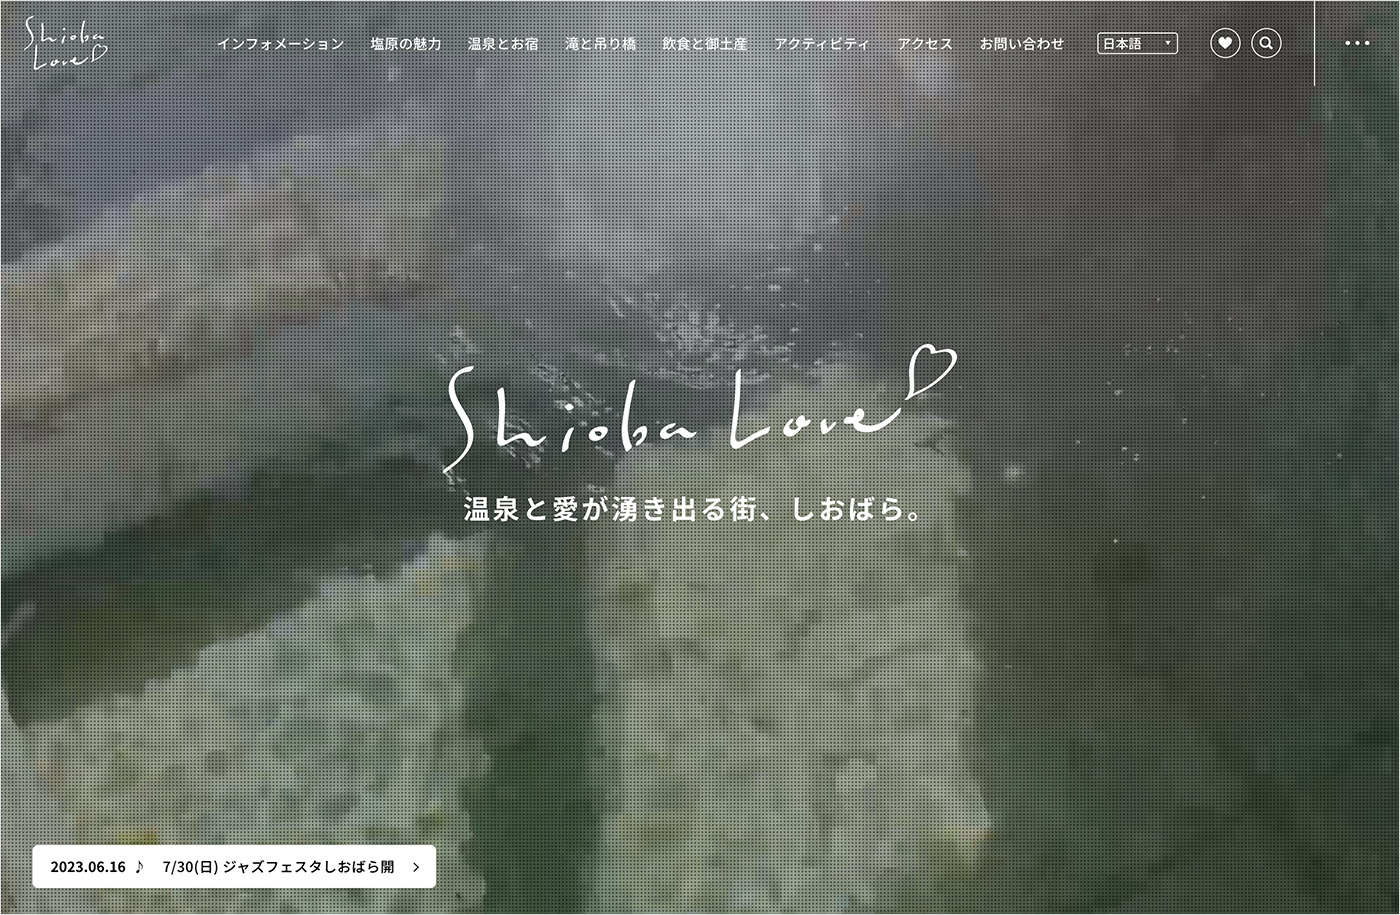 ShiobaLove｜源泉遺産 塩原温泉郷ウェブサイトの画面キャプチャ画像